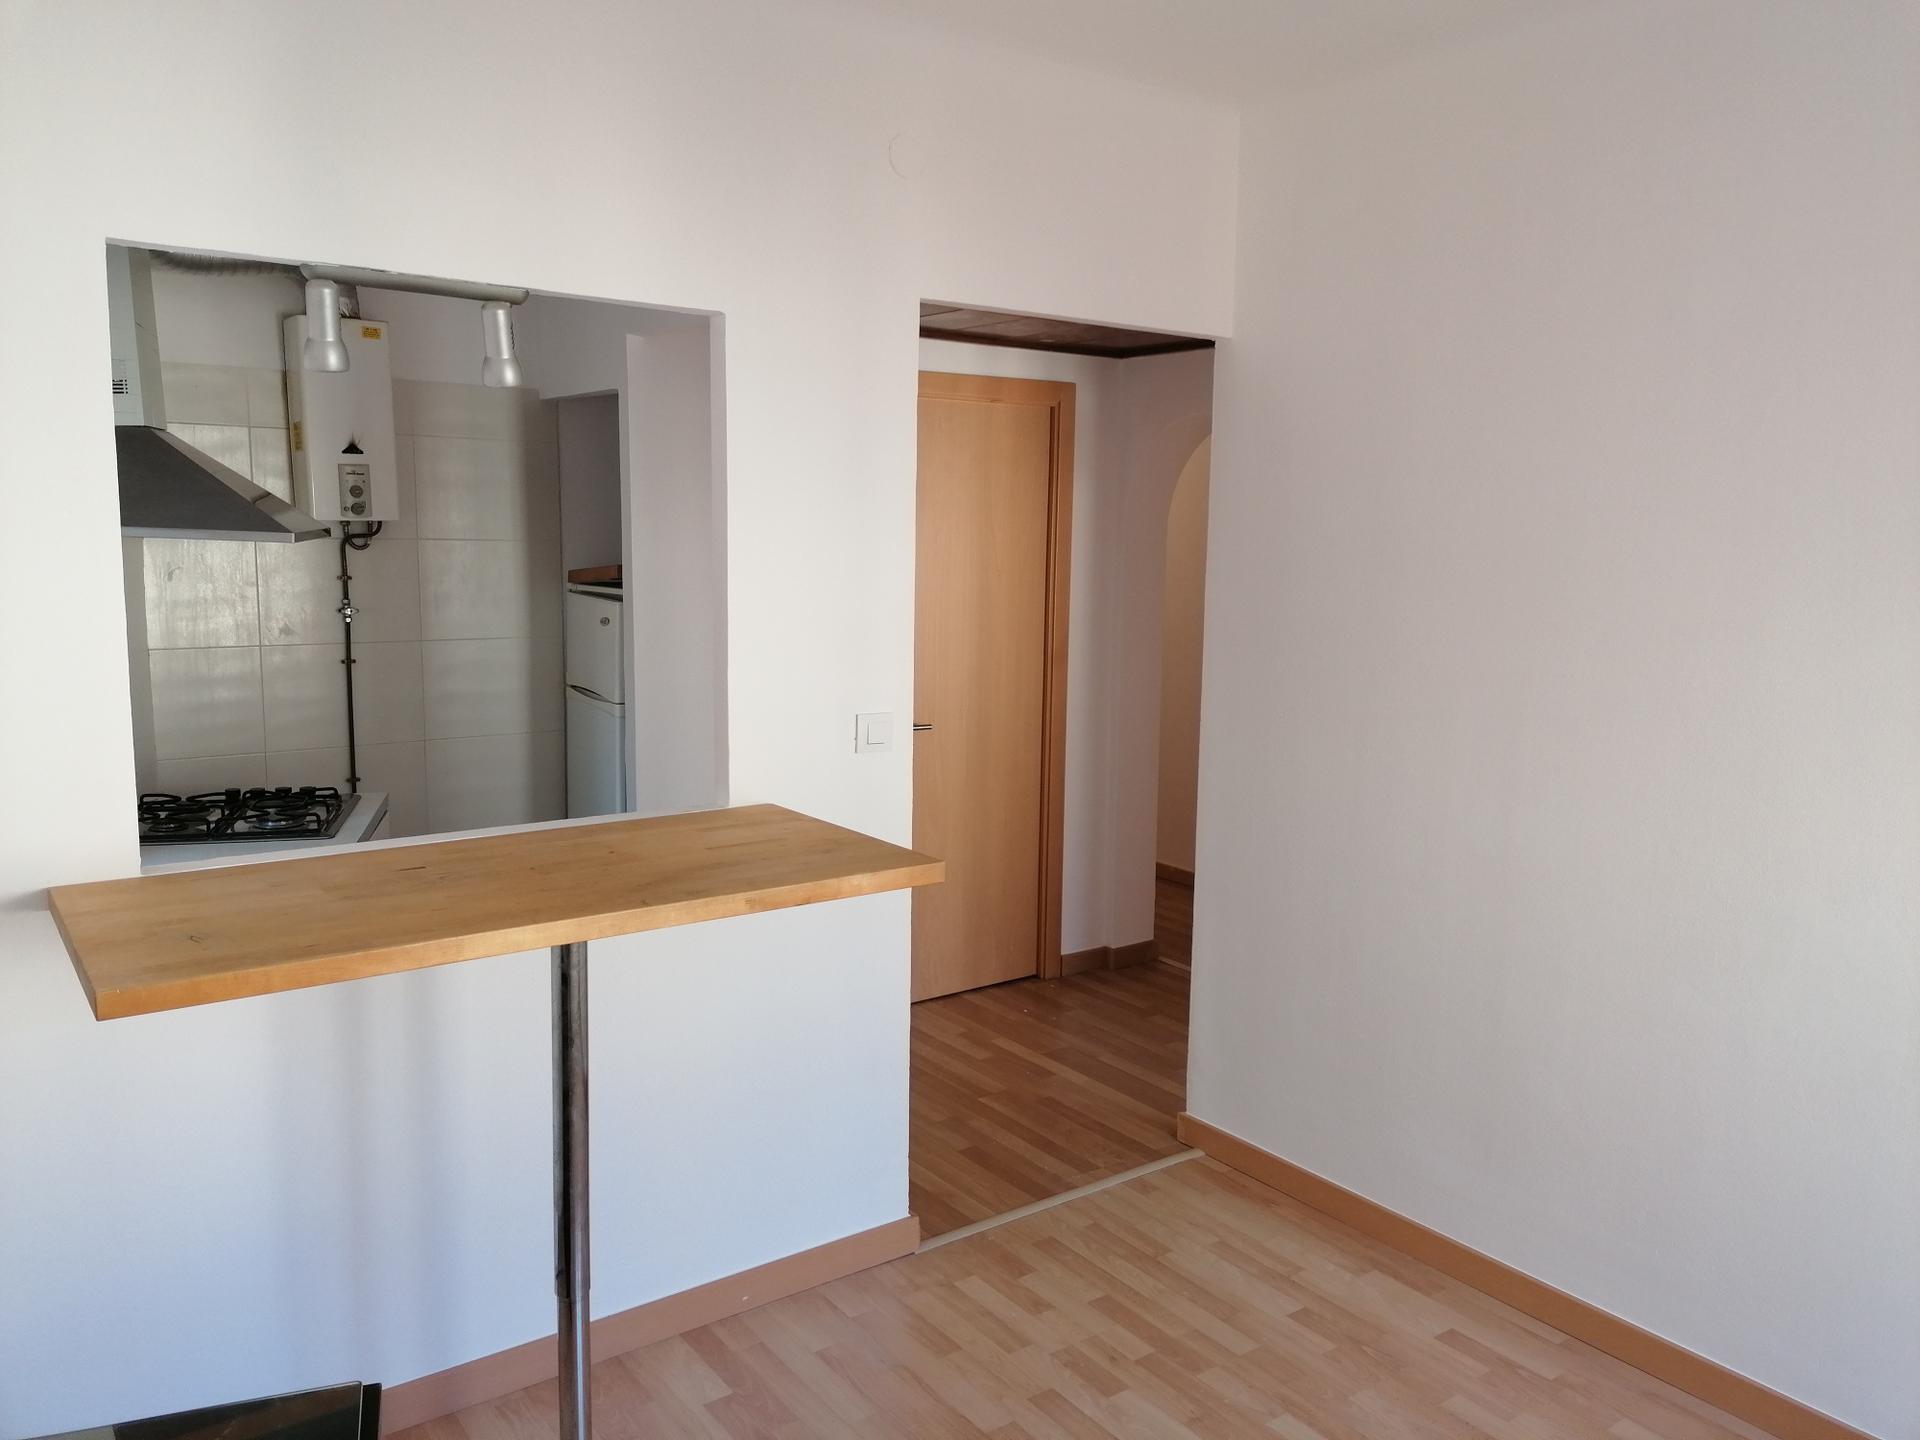 Apartament -
                                      Llançà -
                                      2 dormitoris -
                                      4 ocupants